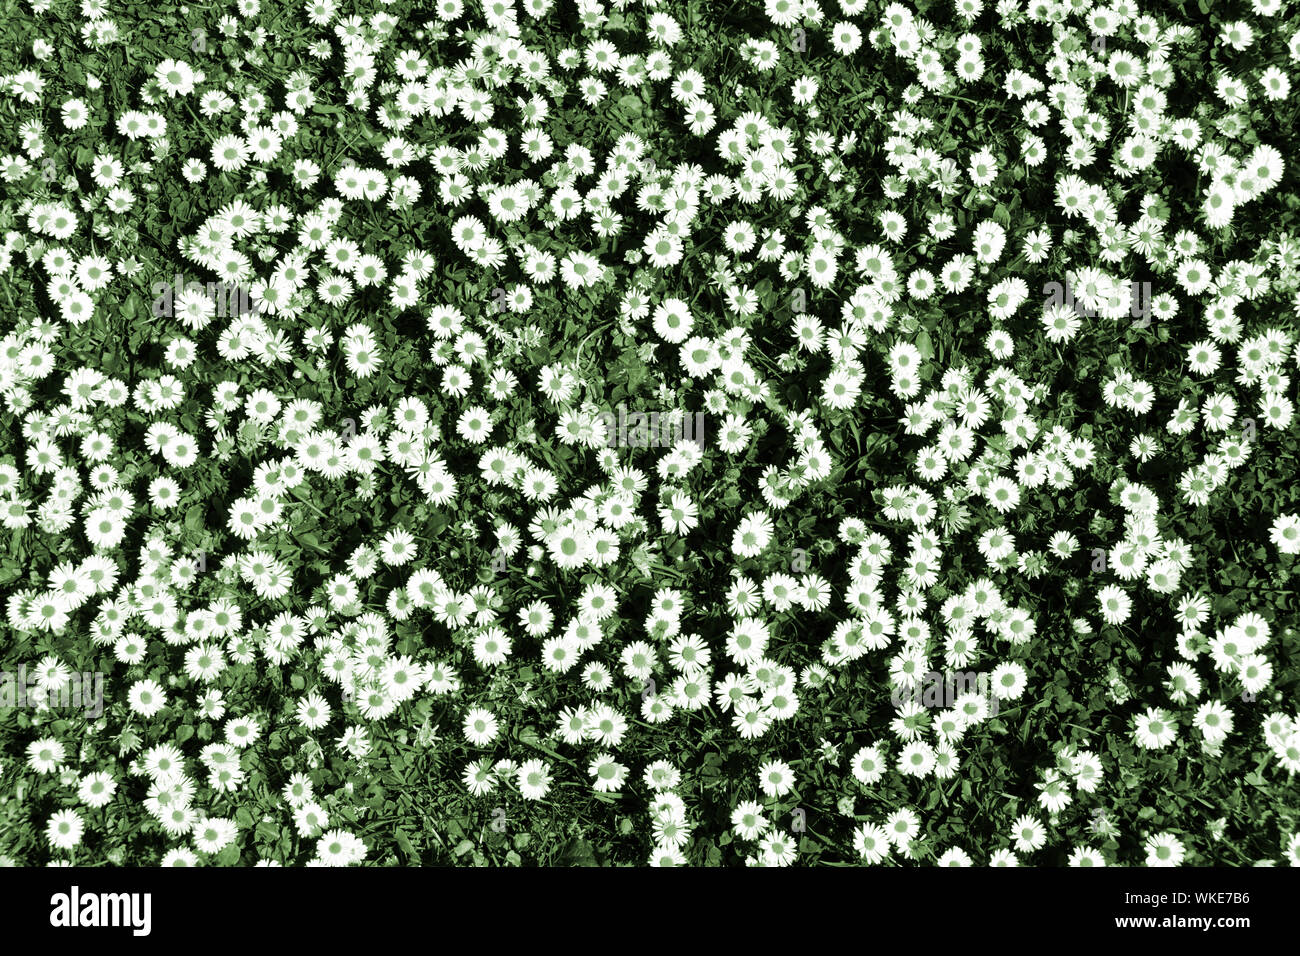 Abstract background Image durch künstliche Farbe Manipulation der Patch von Daises in einem Rasen angelegt mit weißen daisy flowers Köpfe grüne Punkte & Gras UK Stockfoto